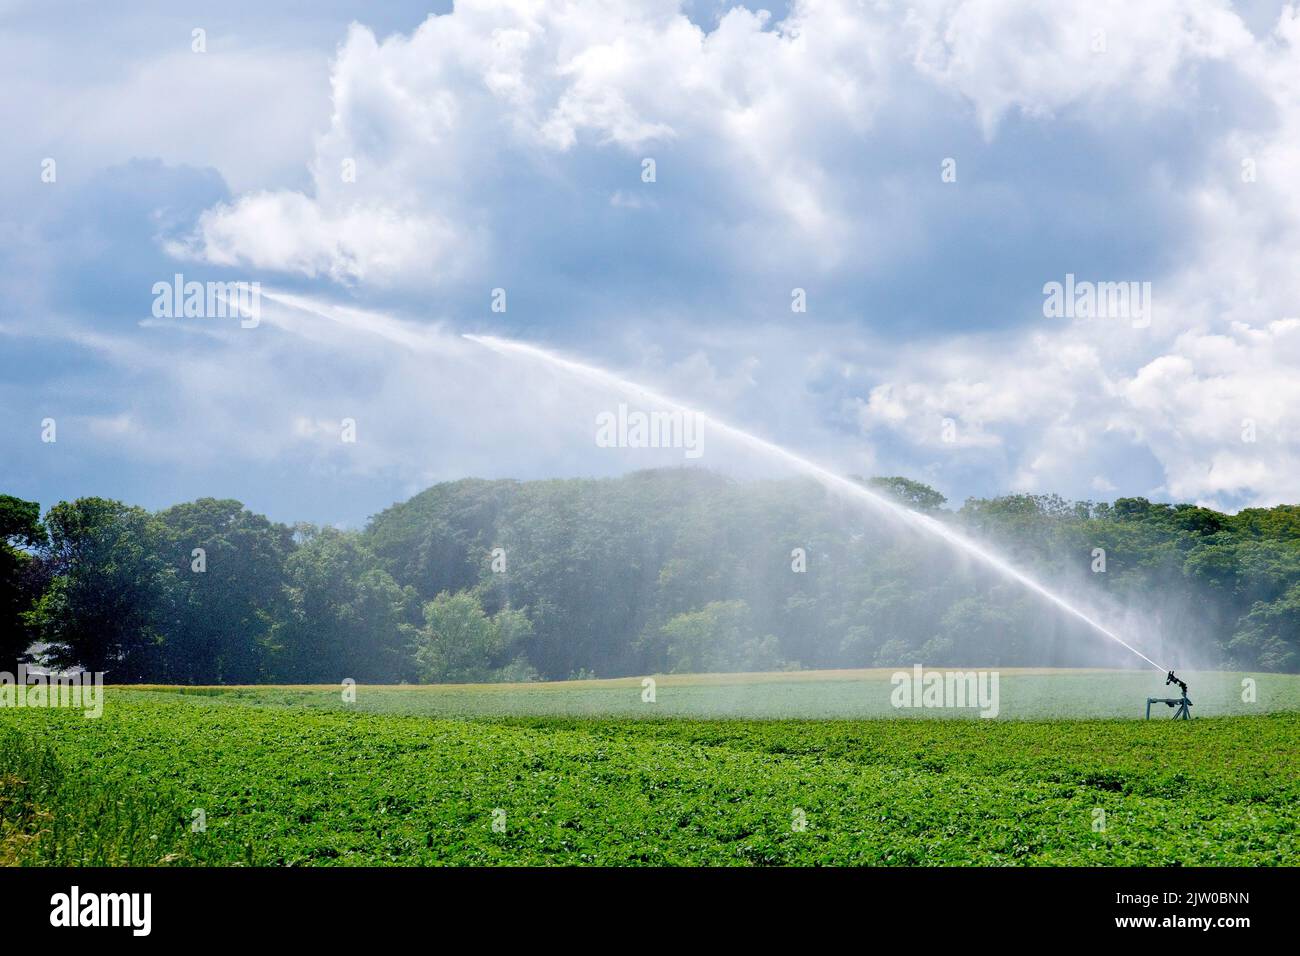 Un cannone spara acqua nell'aria su un campo di patate mentre le nubi di pioggia si raccolgono sullo sfondo. Foto Stock